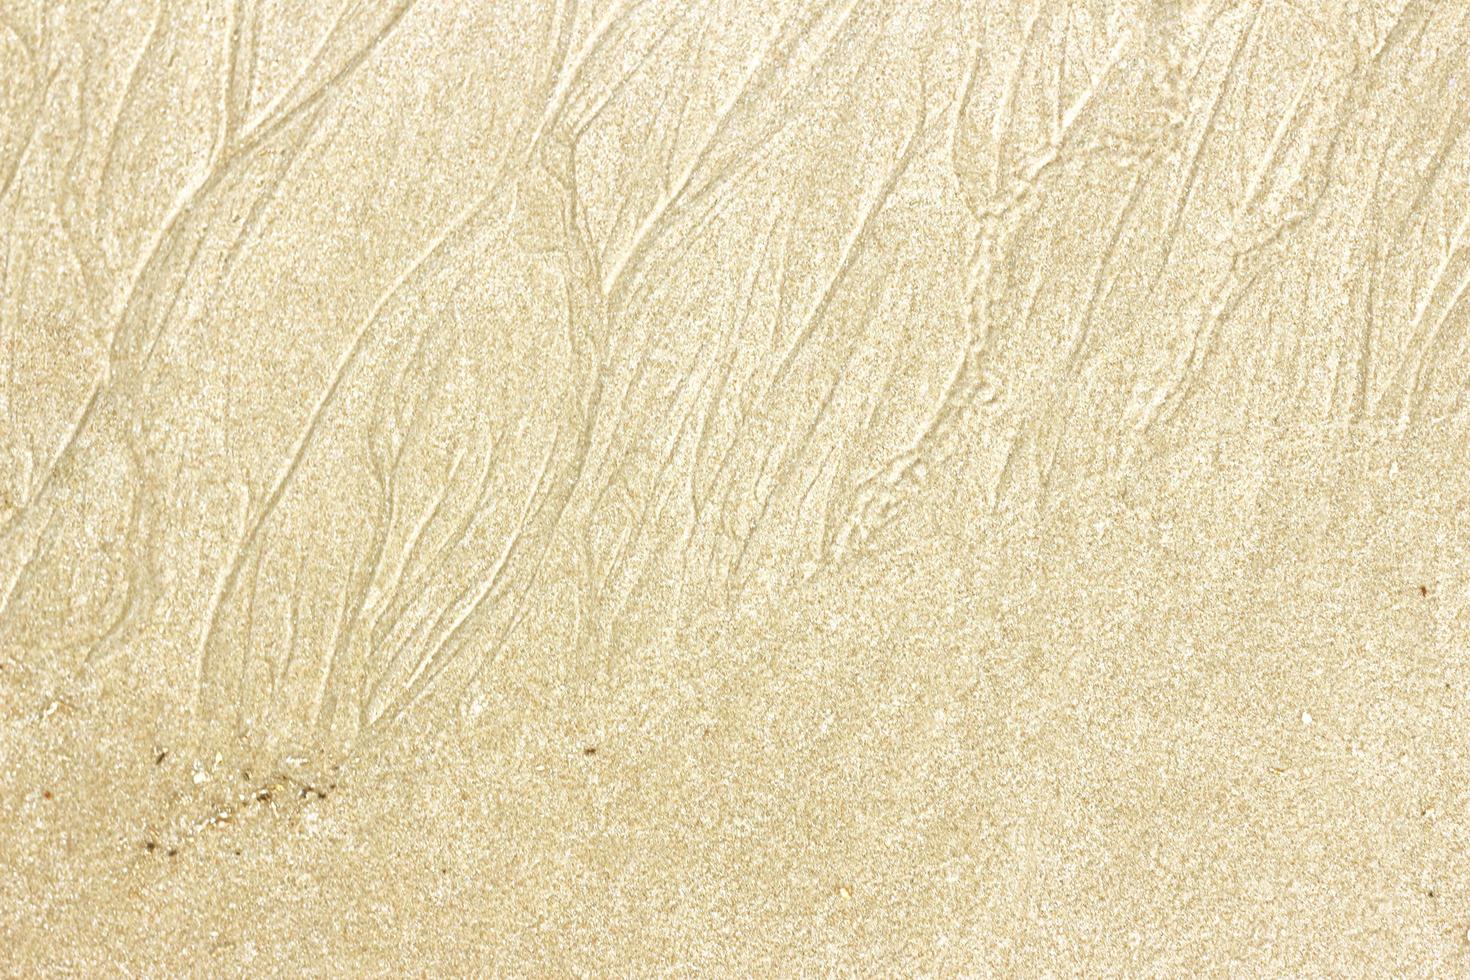 Sand Textur Hintergrund foto